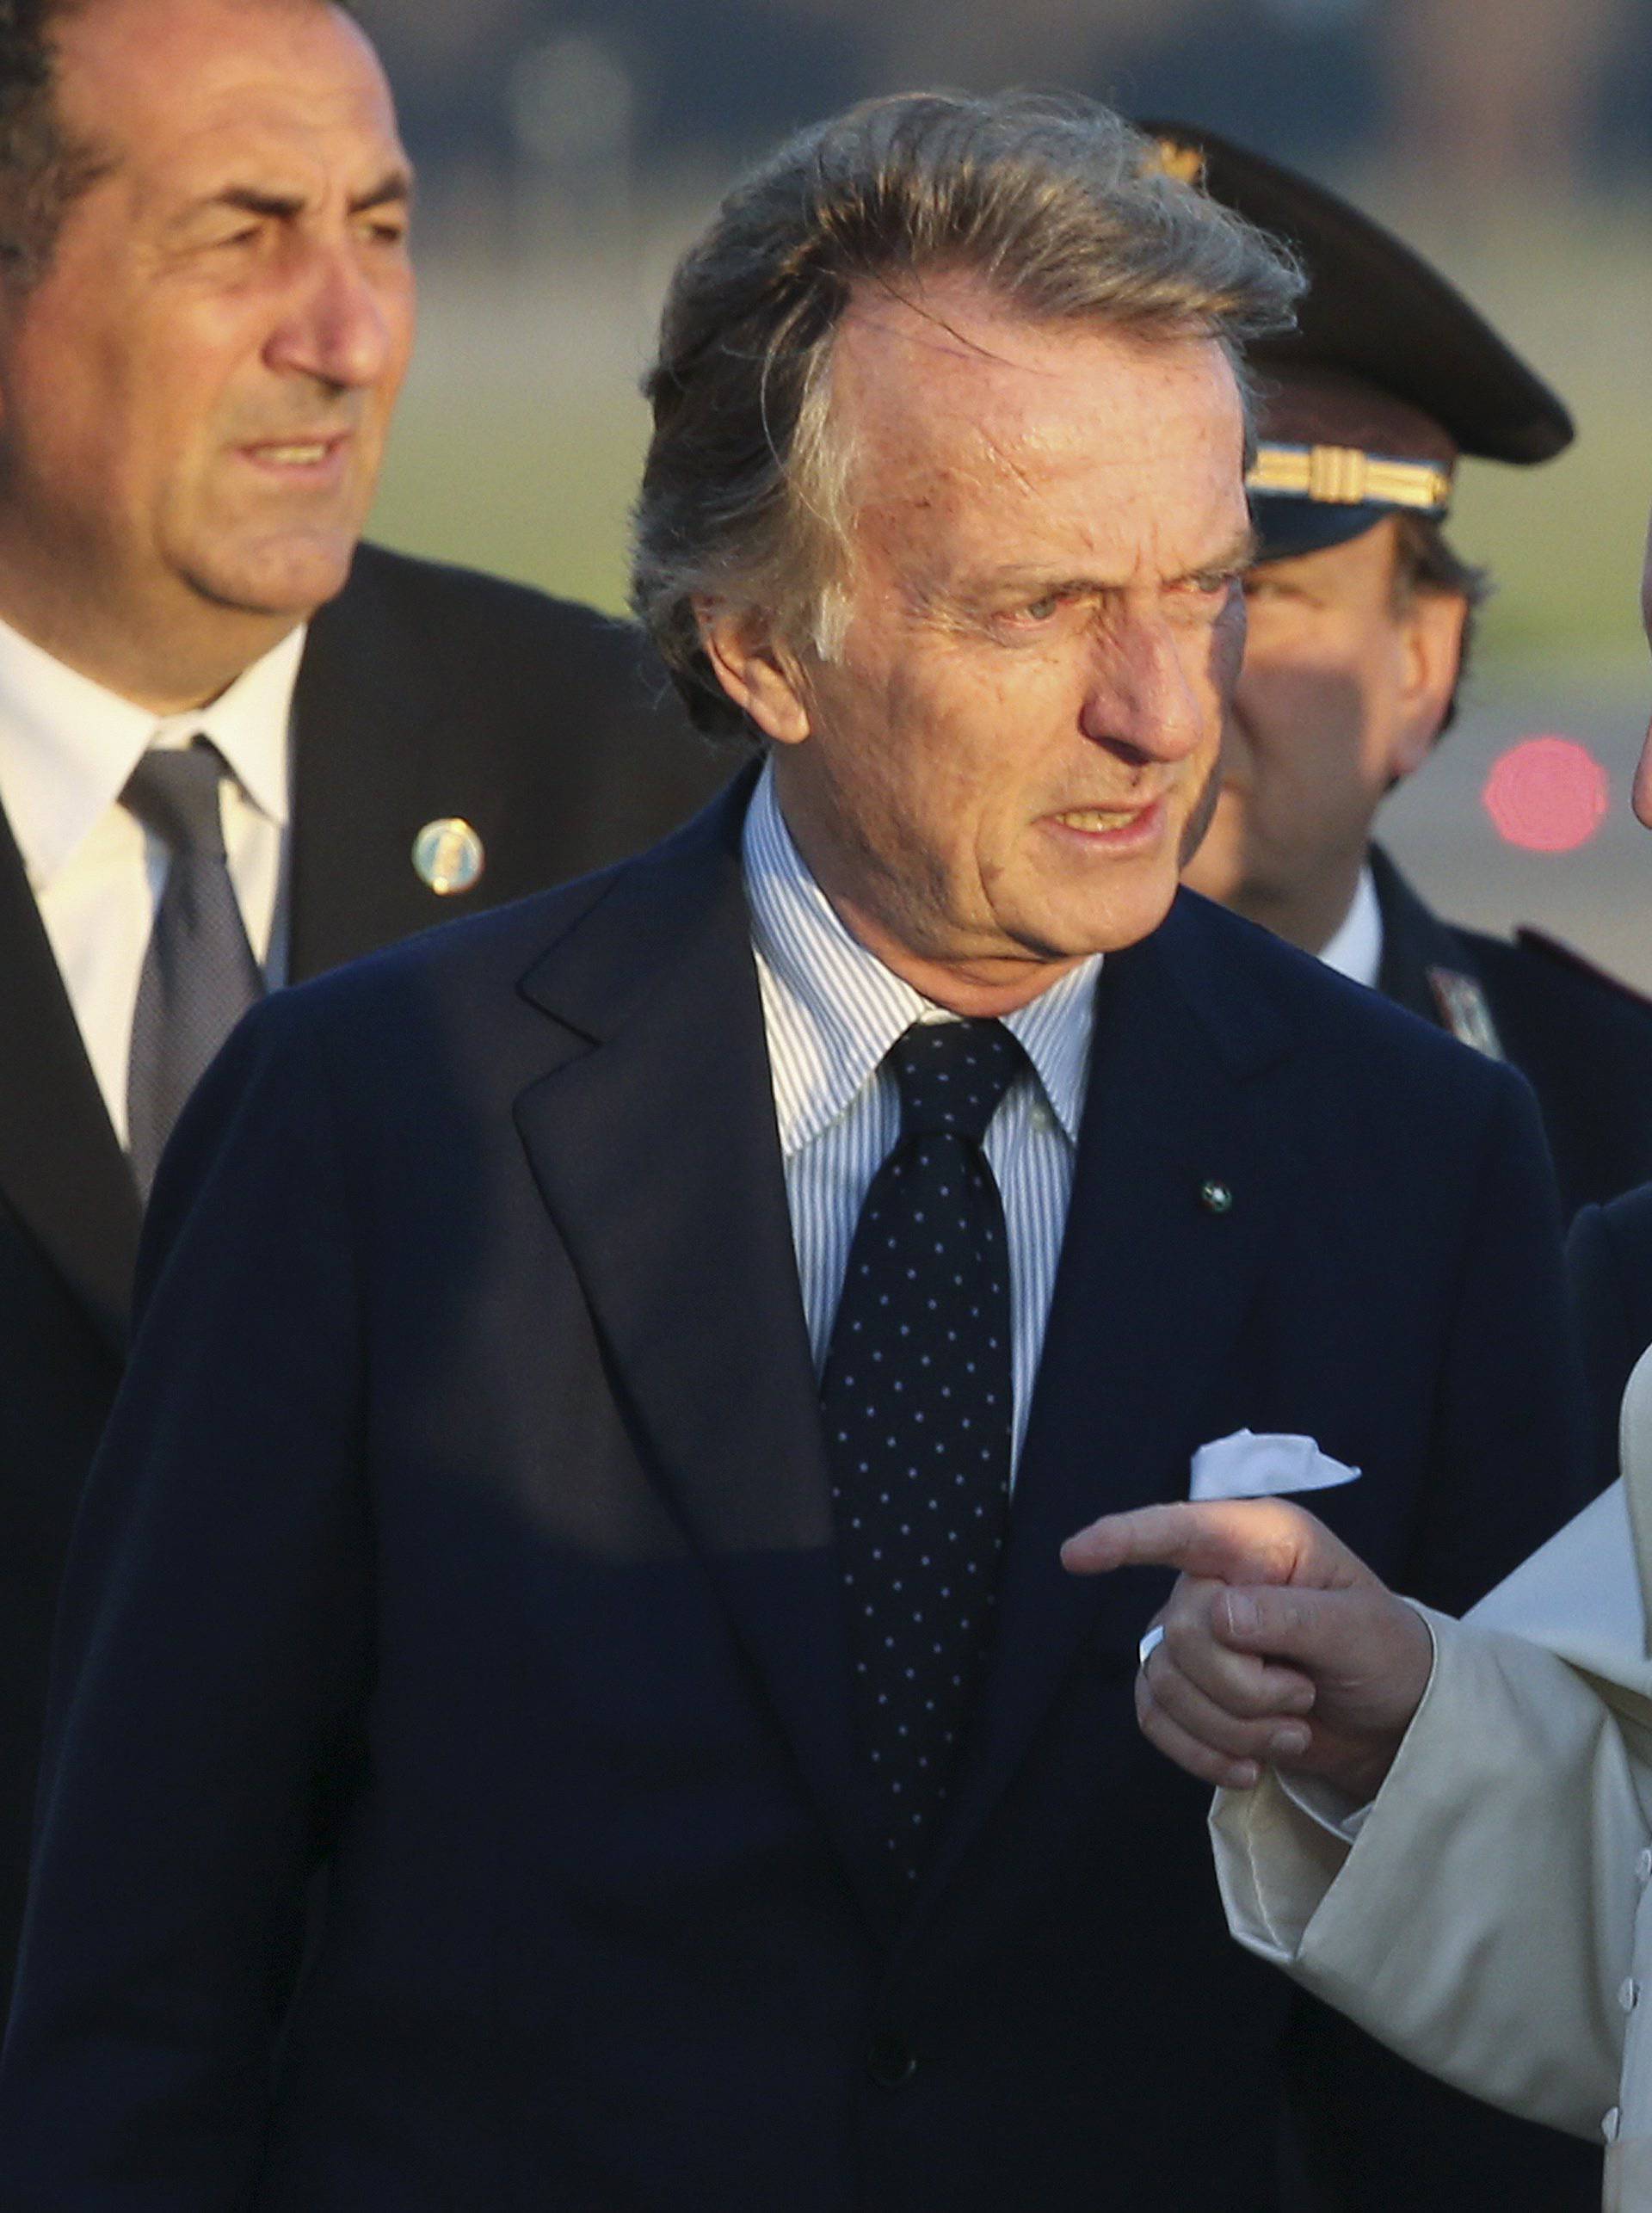 Pope Francis talks to Alitalia's President Luca Cordero di Montezemolo as he boards a plane at Fiumicino Airport in Rome